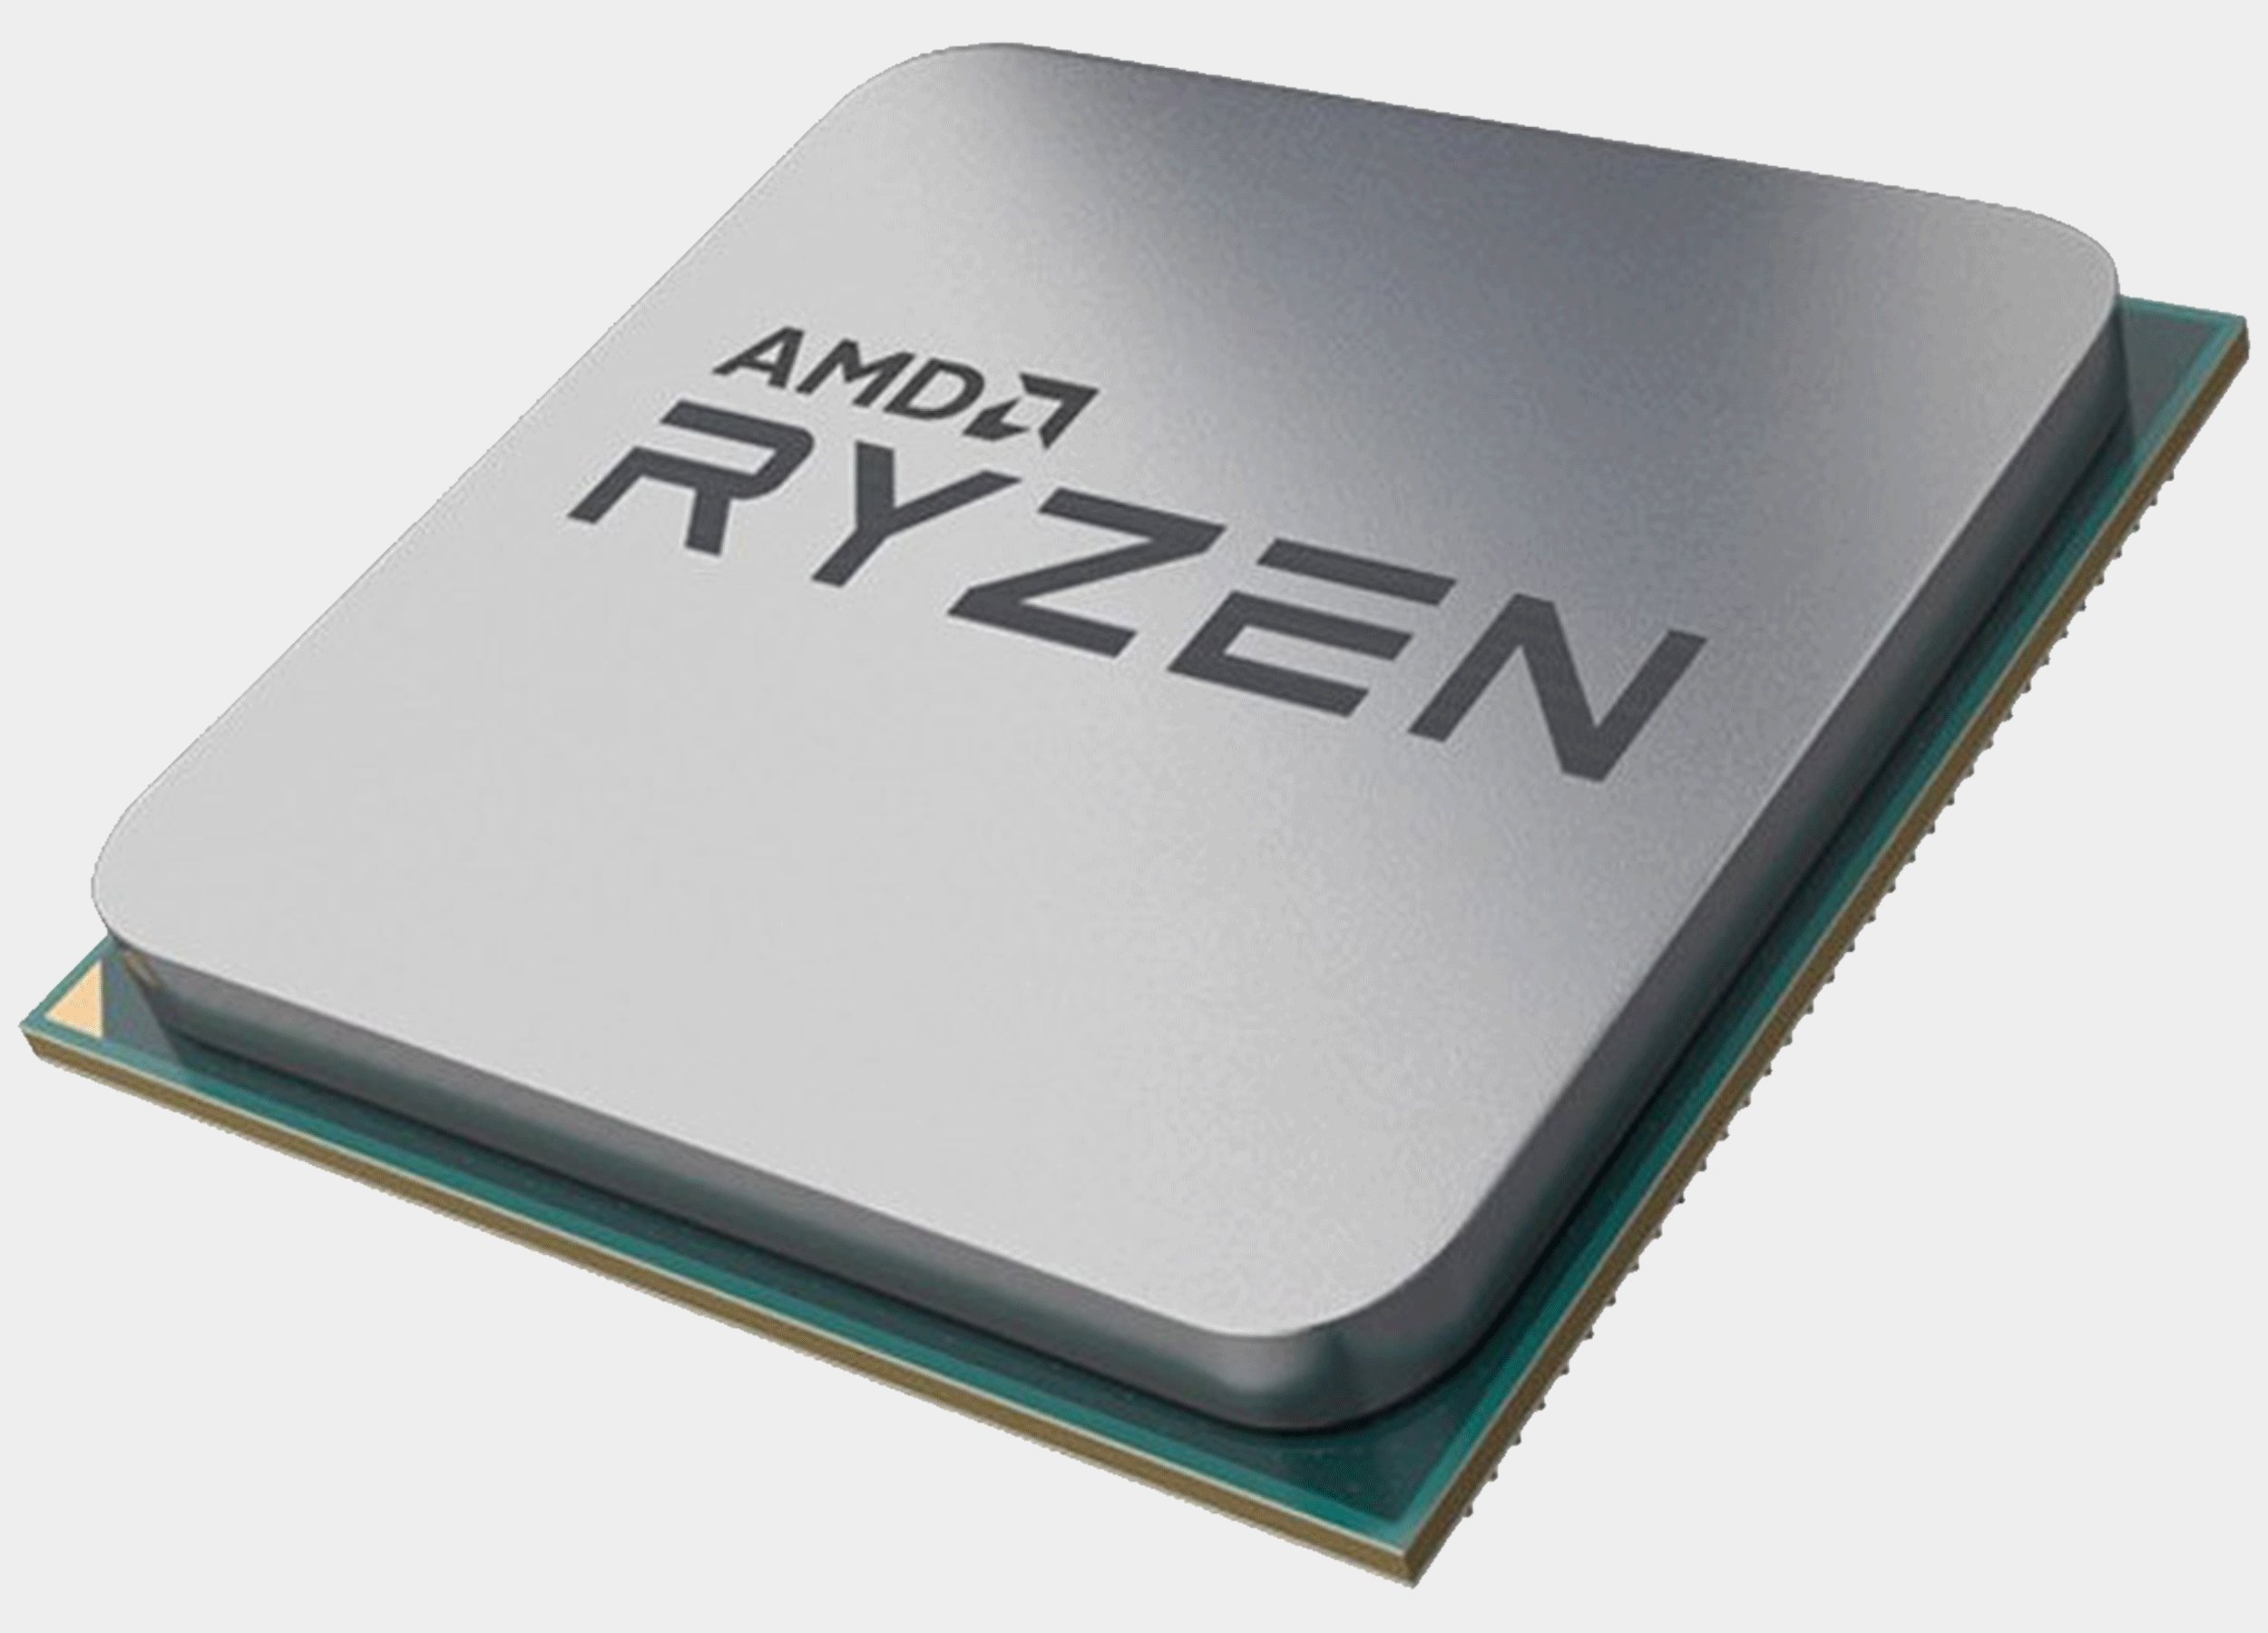 AMD RYZEN 3 2100GE PRO TRAY